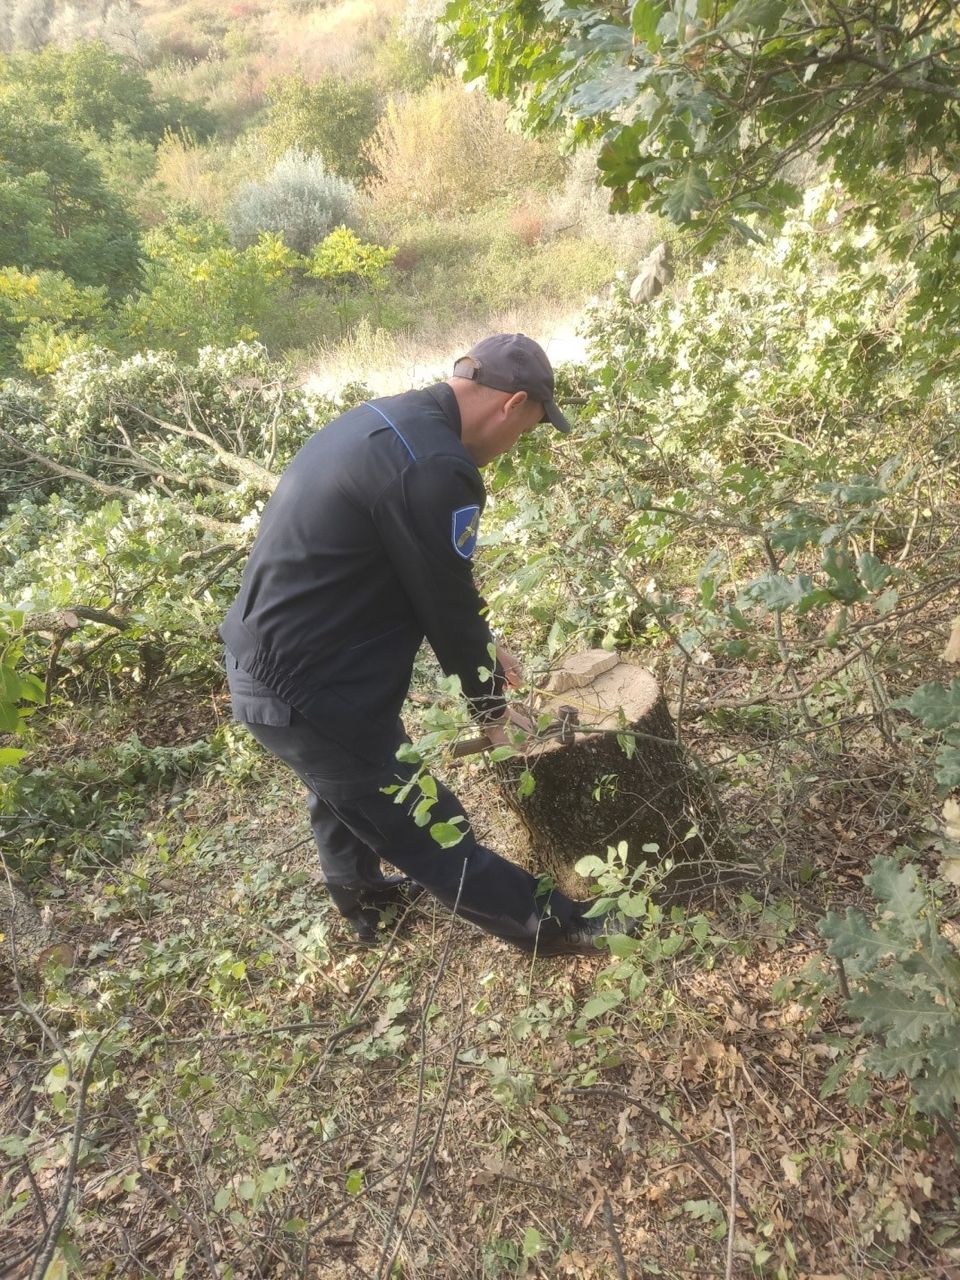 FOTO Stejari și ulmi, tăiați ilegal la Căușeni. Inspectorii de mediu: „Acțiunea a pus în pericol ecosistemul local”